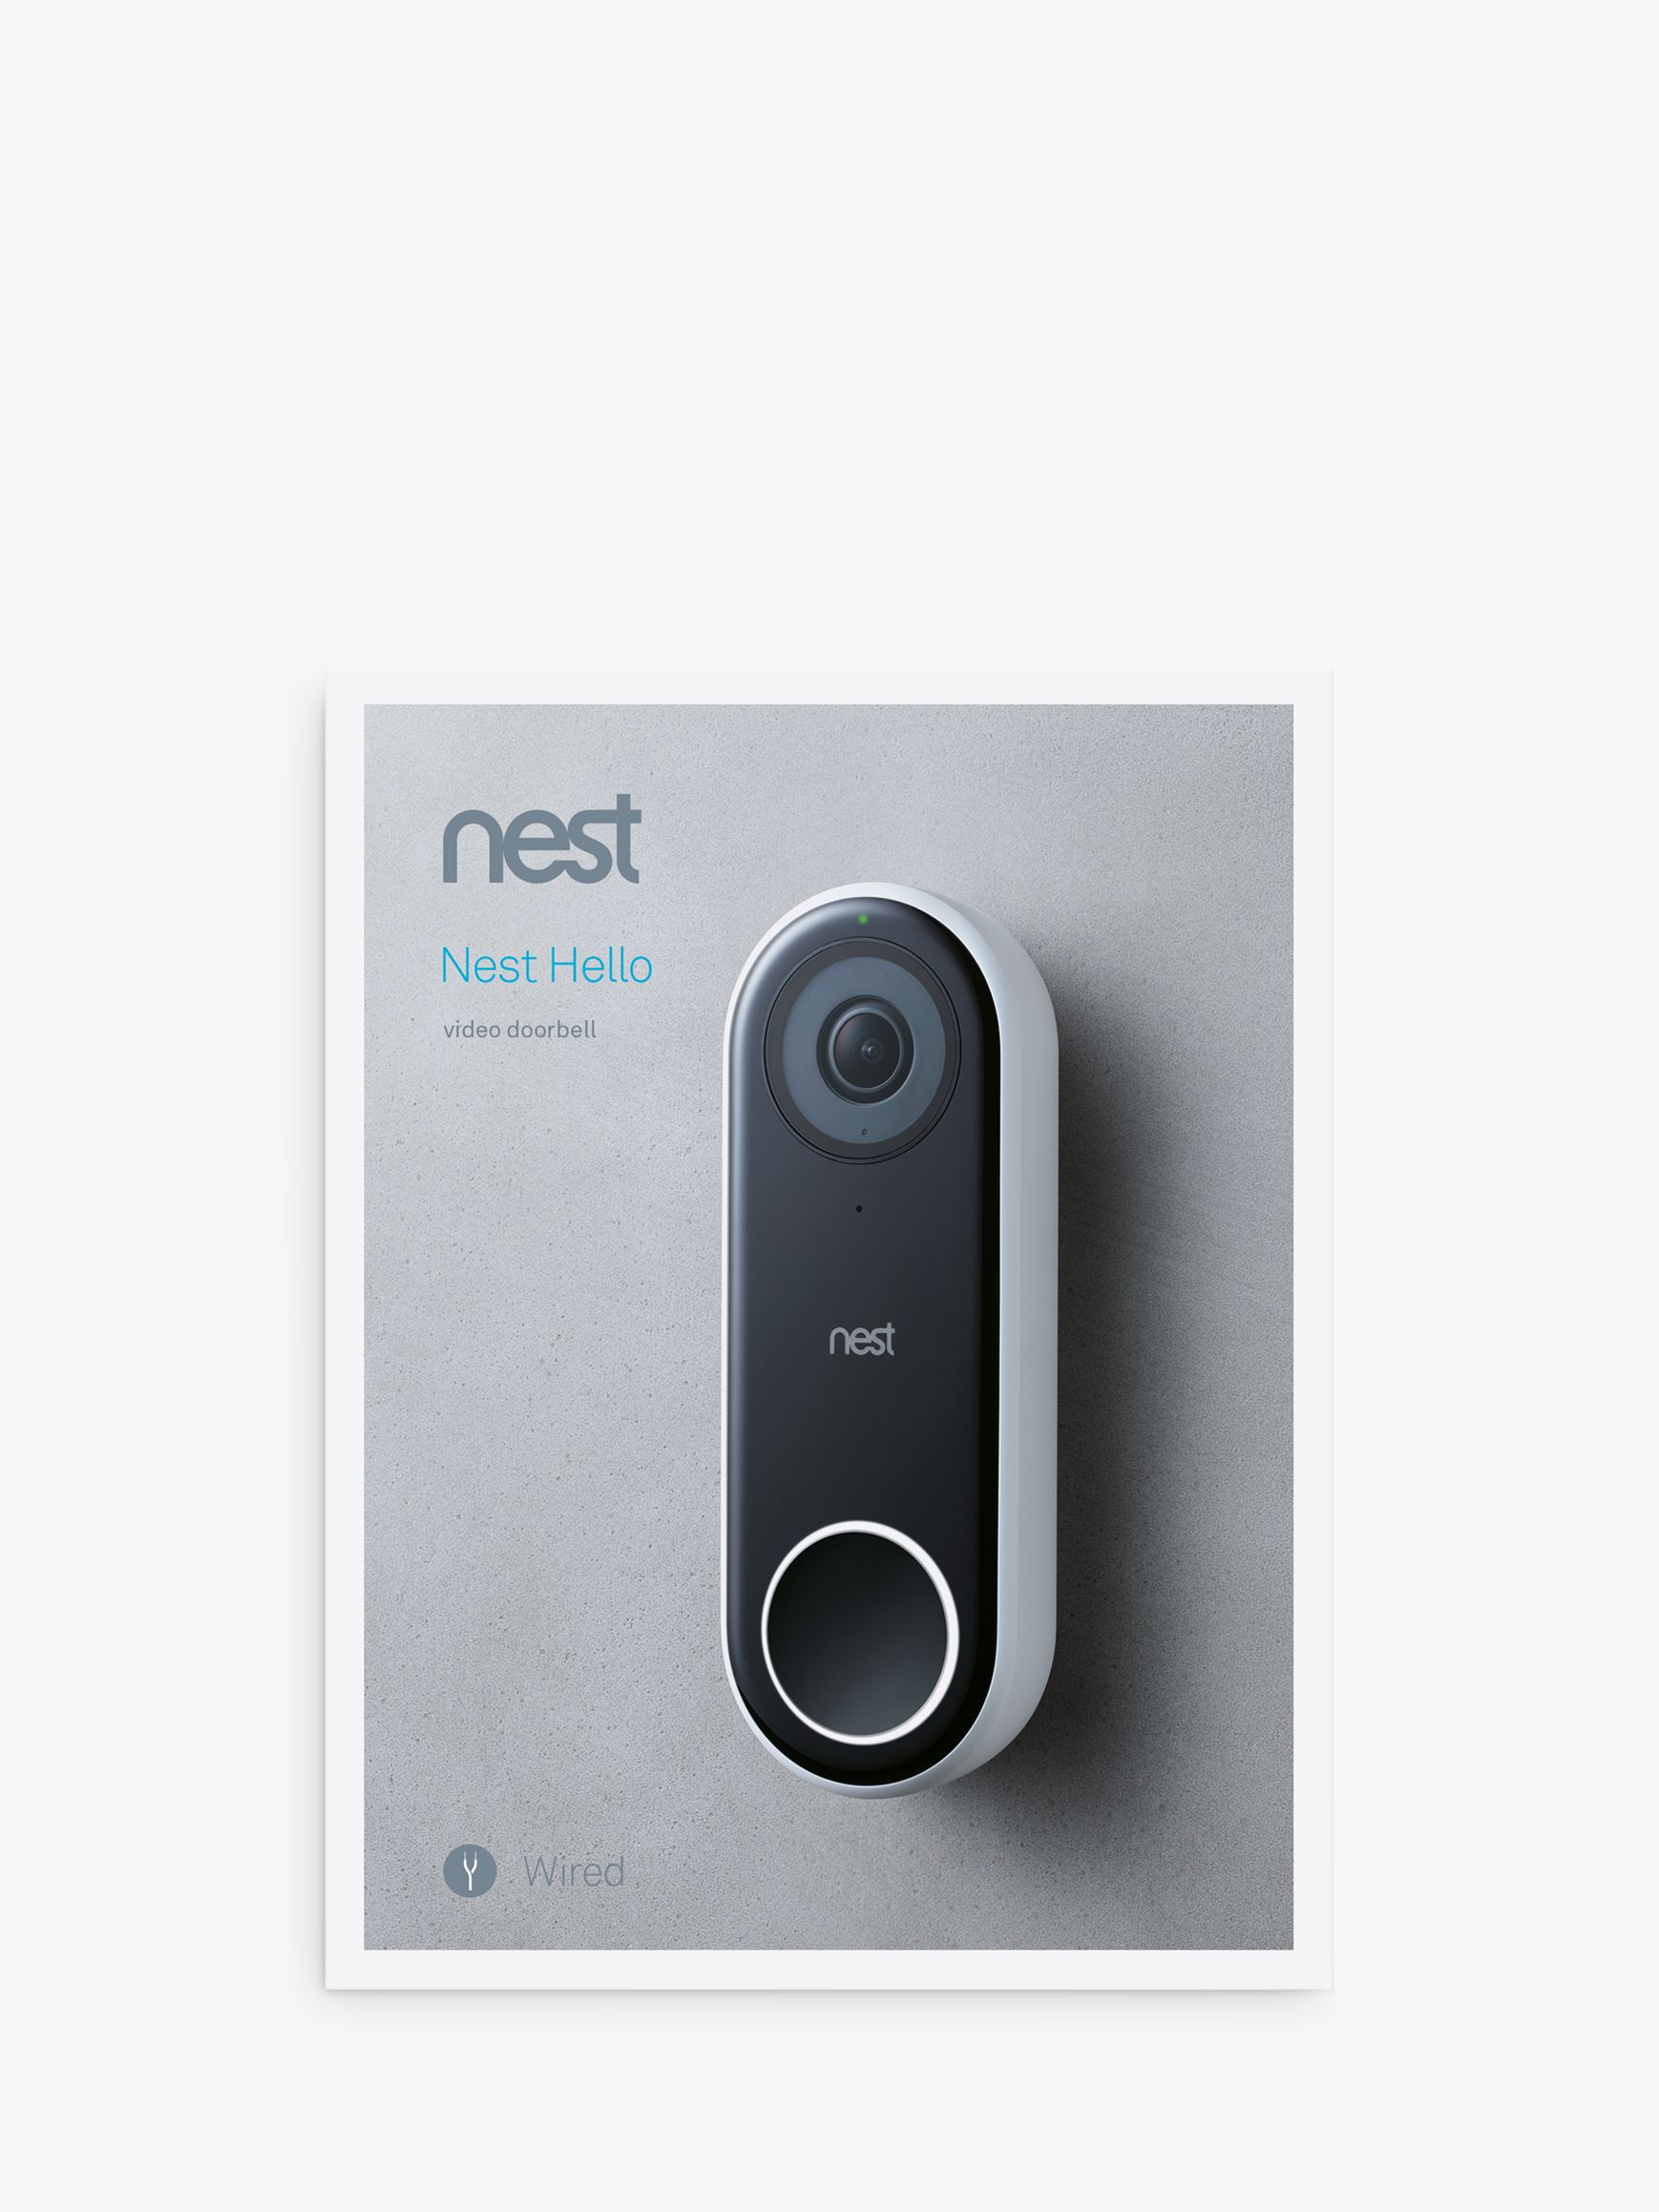 google nest hello video doorbell